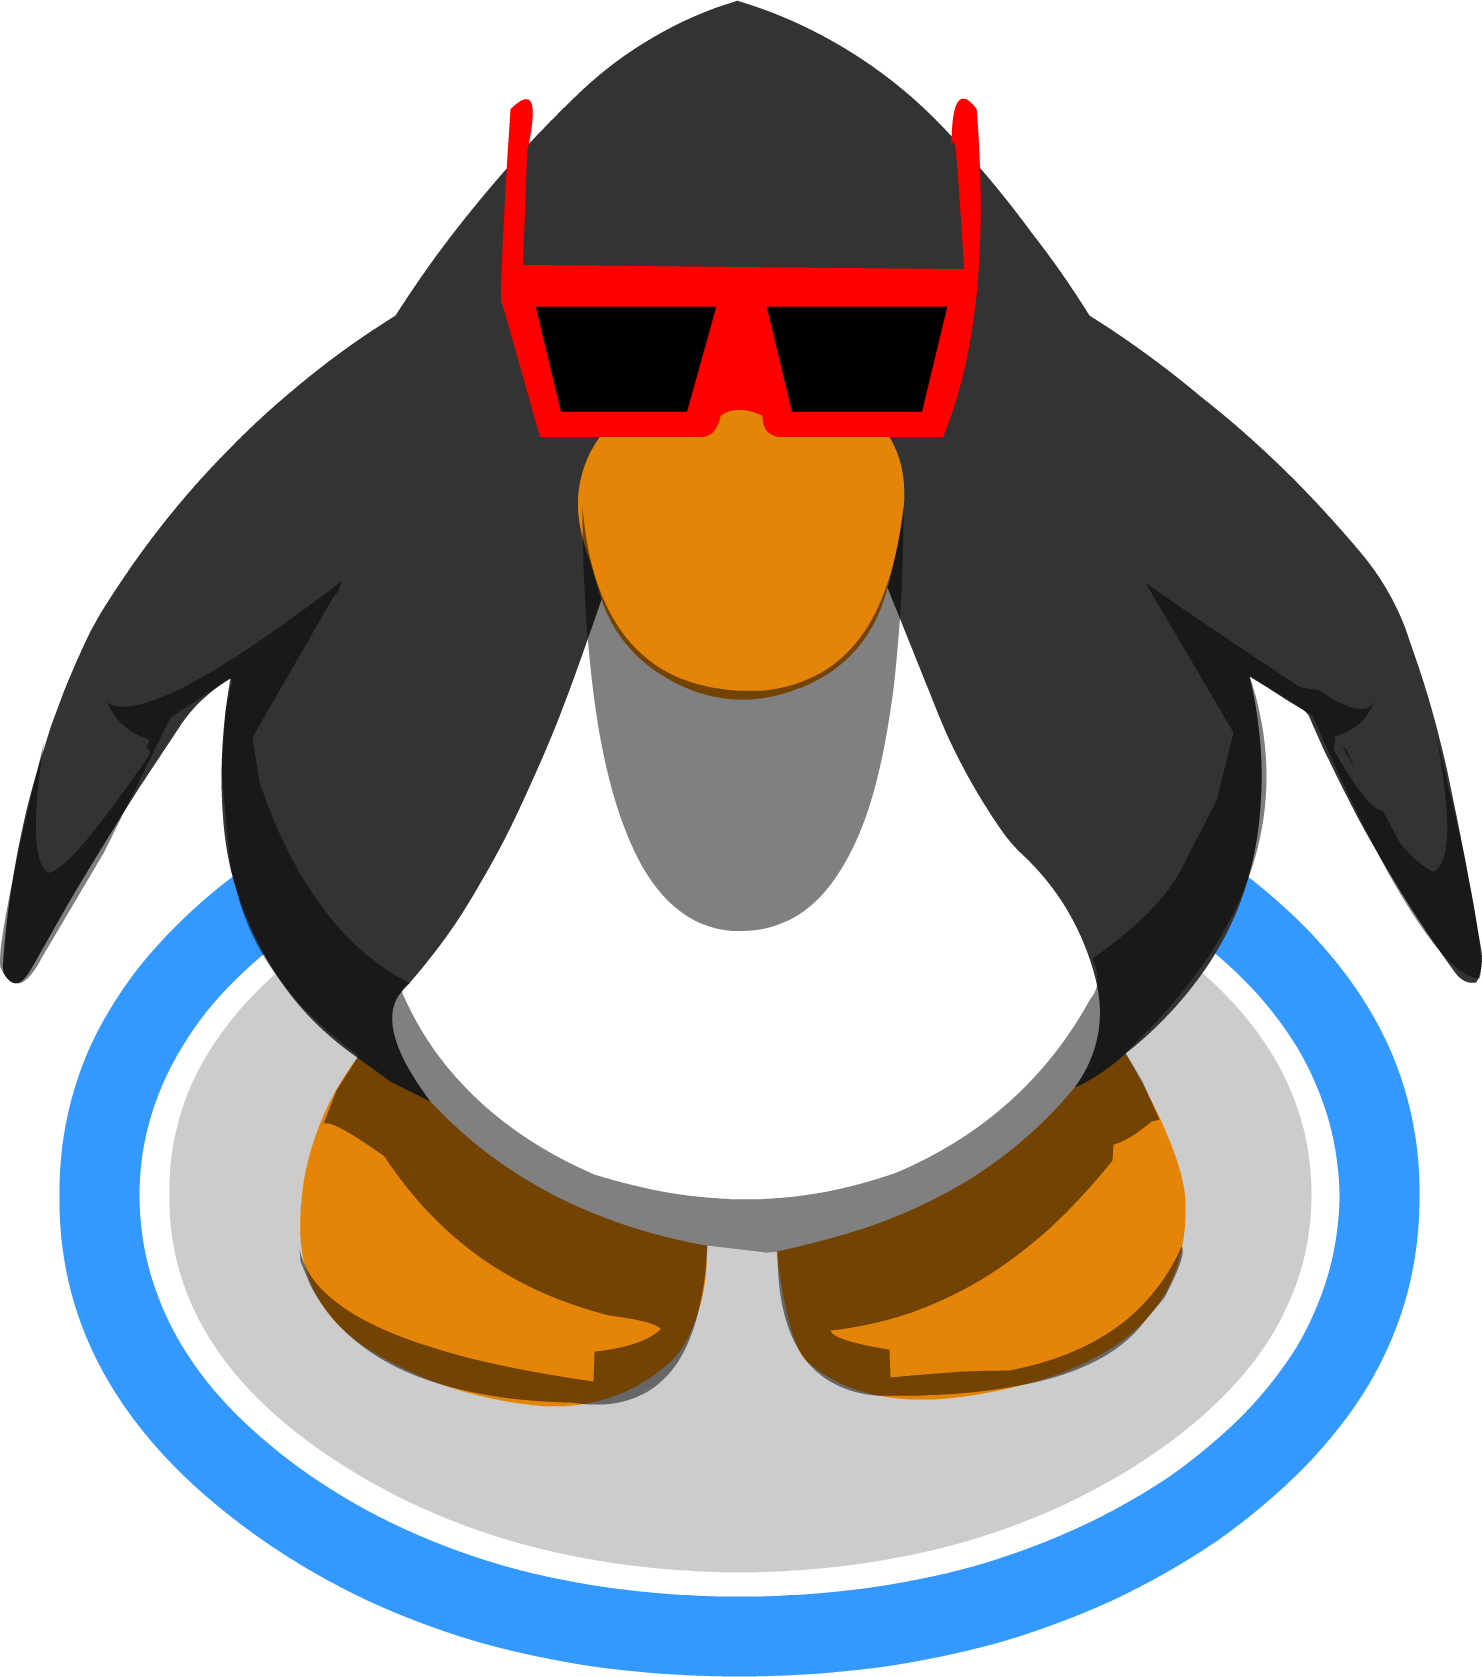 Club Penguin Penguin In Game (1482x1677)